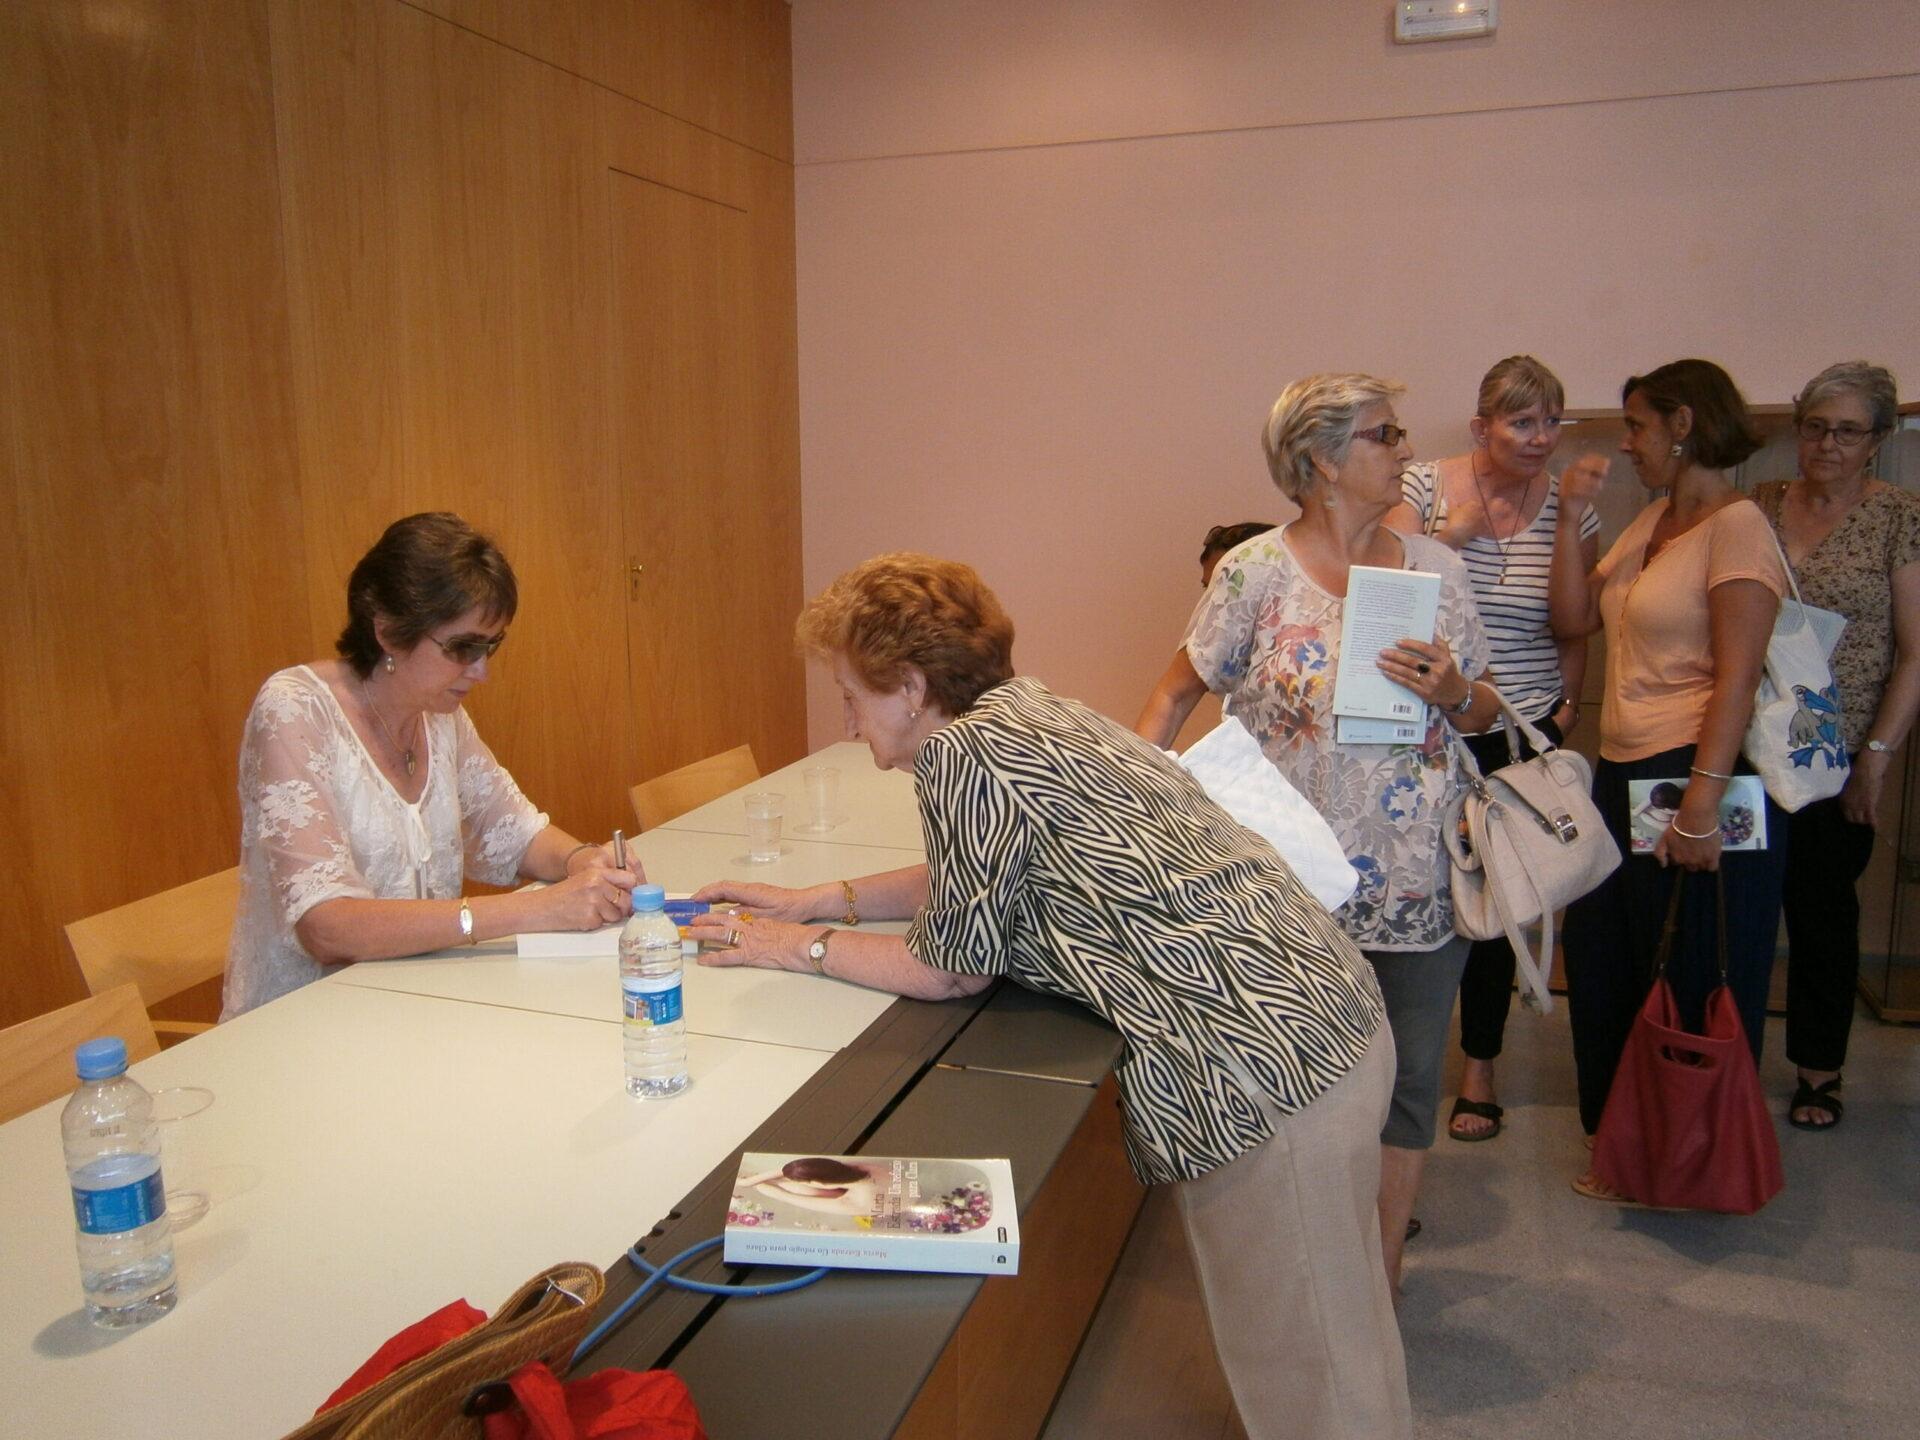 Firmando un ejemplar con el público en fila esperando turno